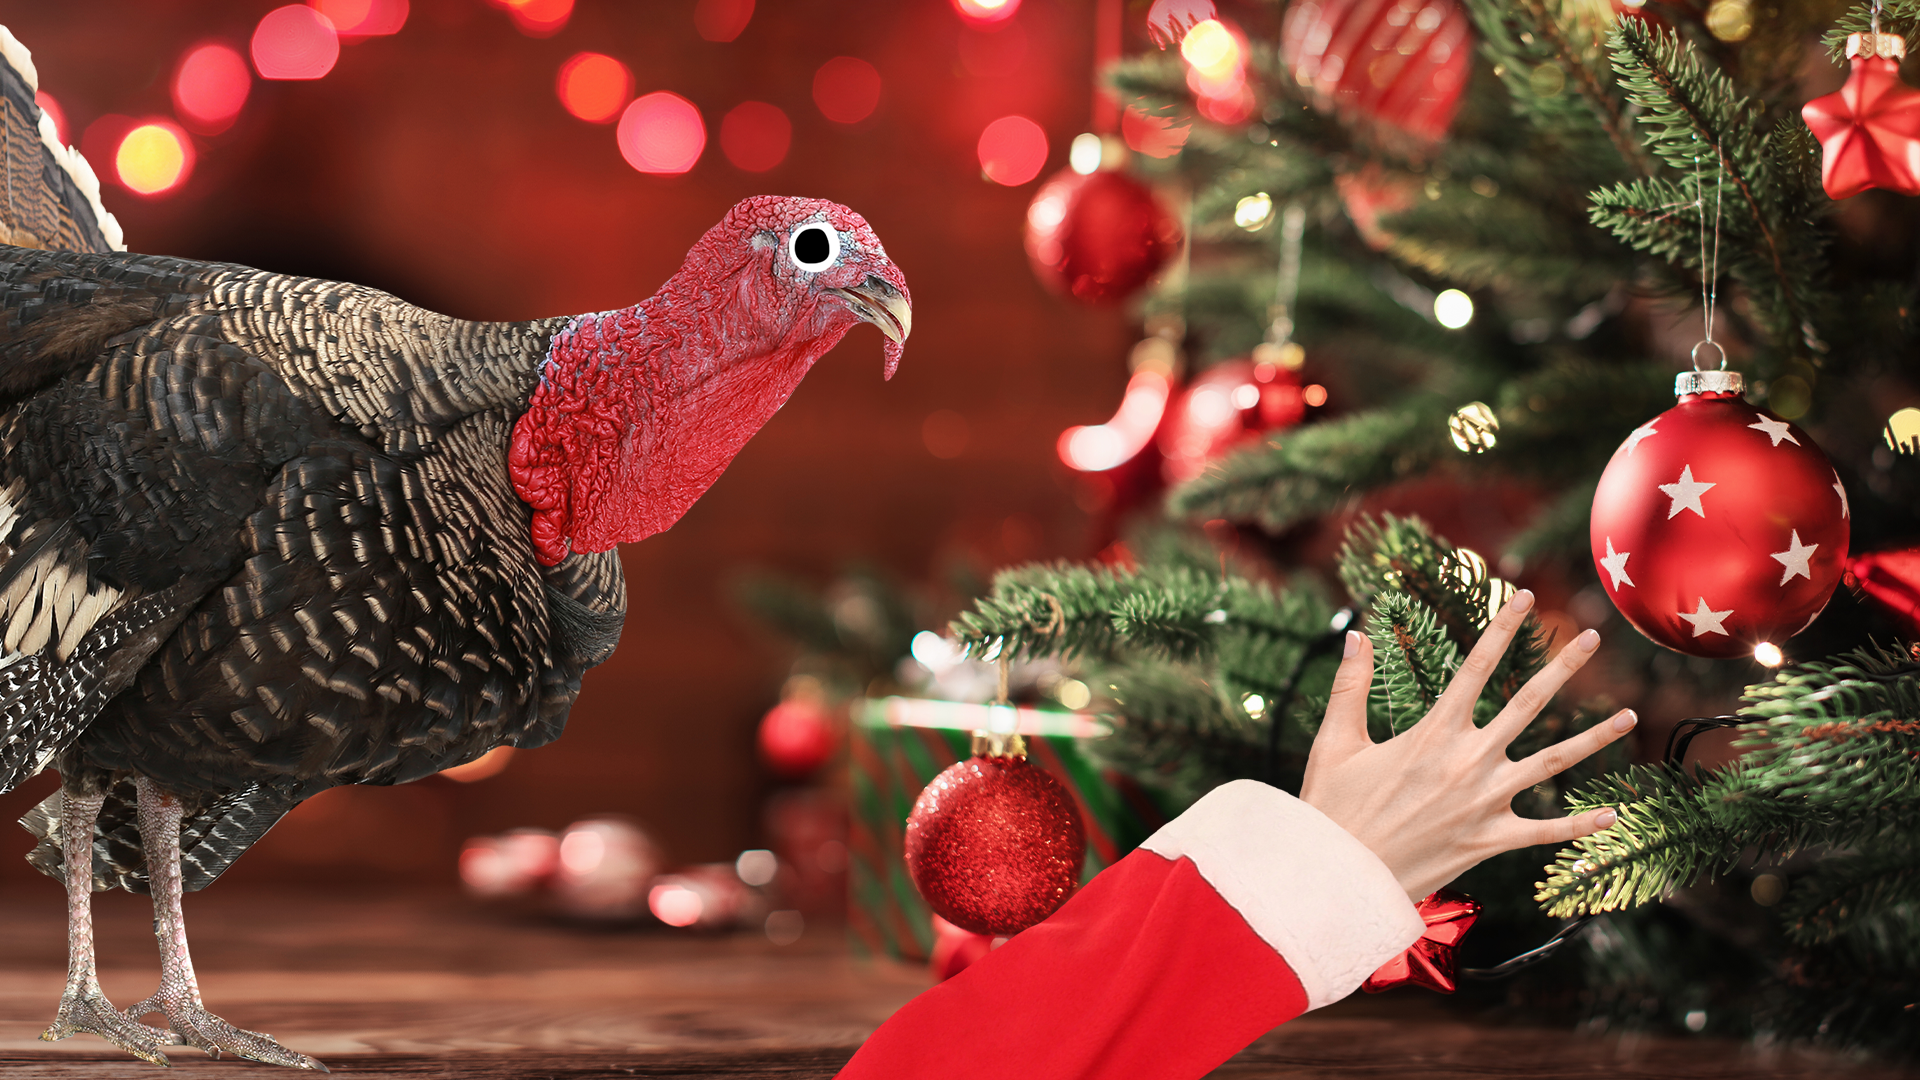 Beano turkey and santa hand with Christmas tree